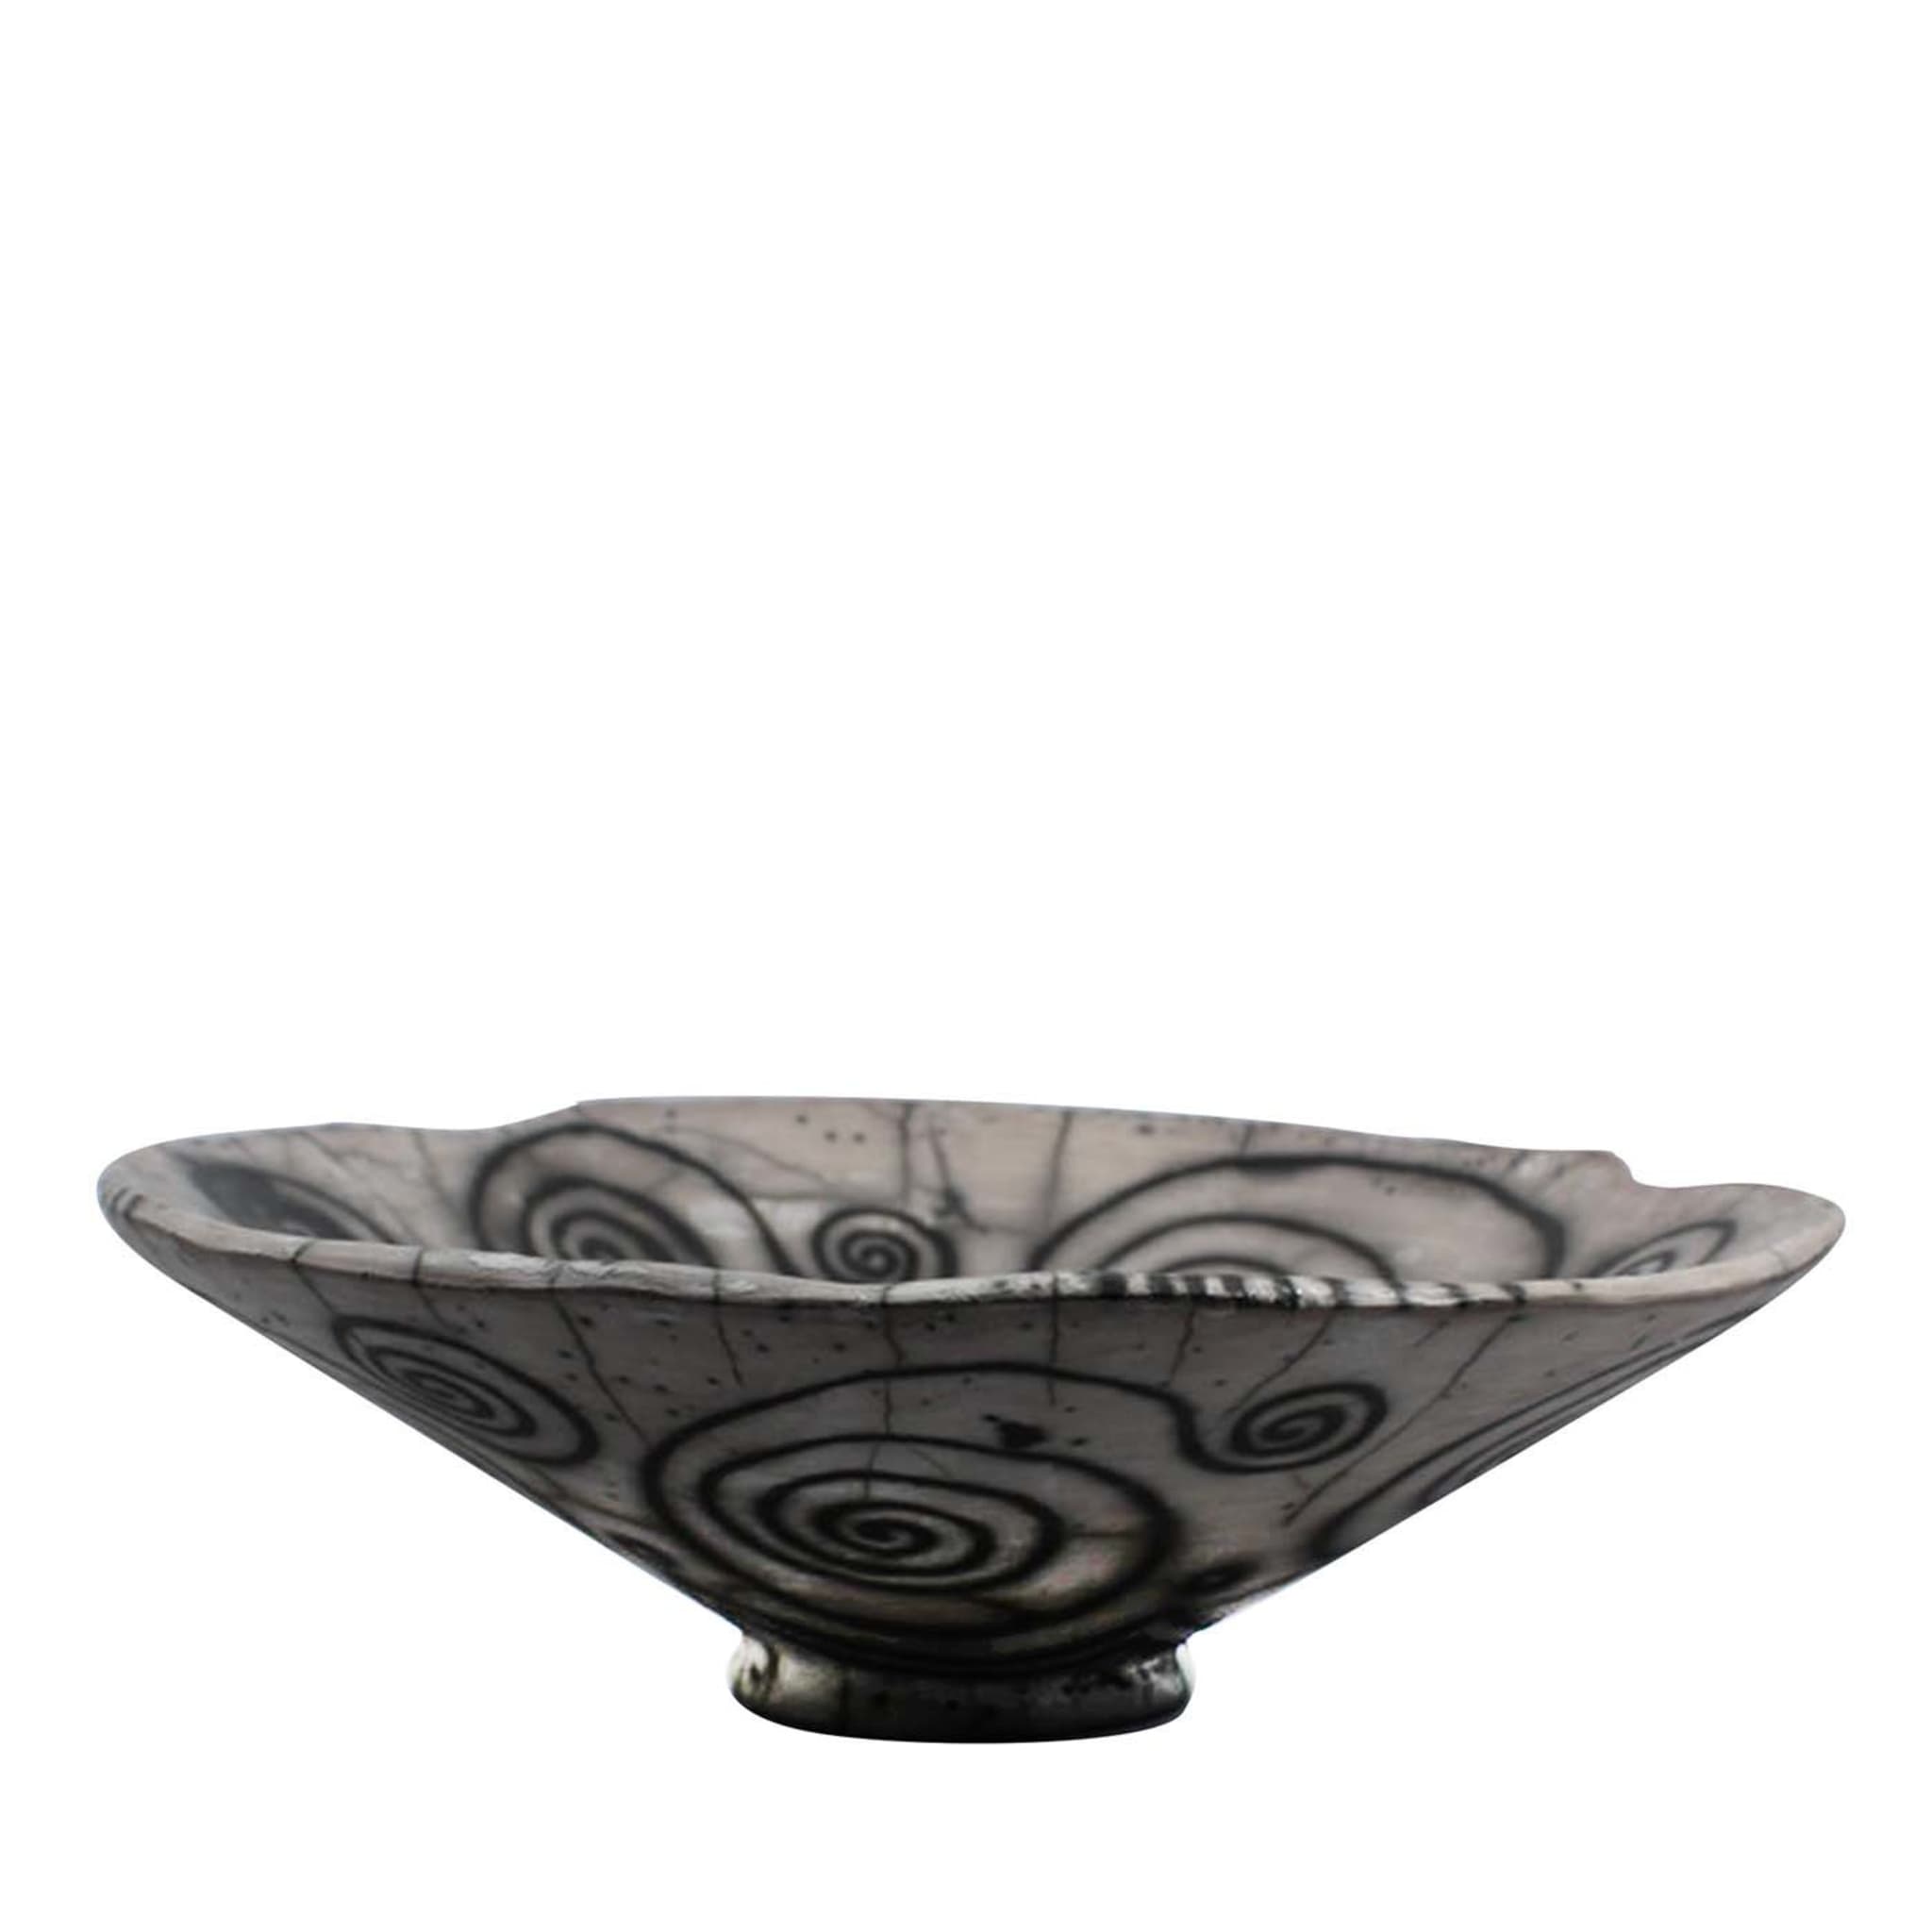 David ceramic bowl - Main view